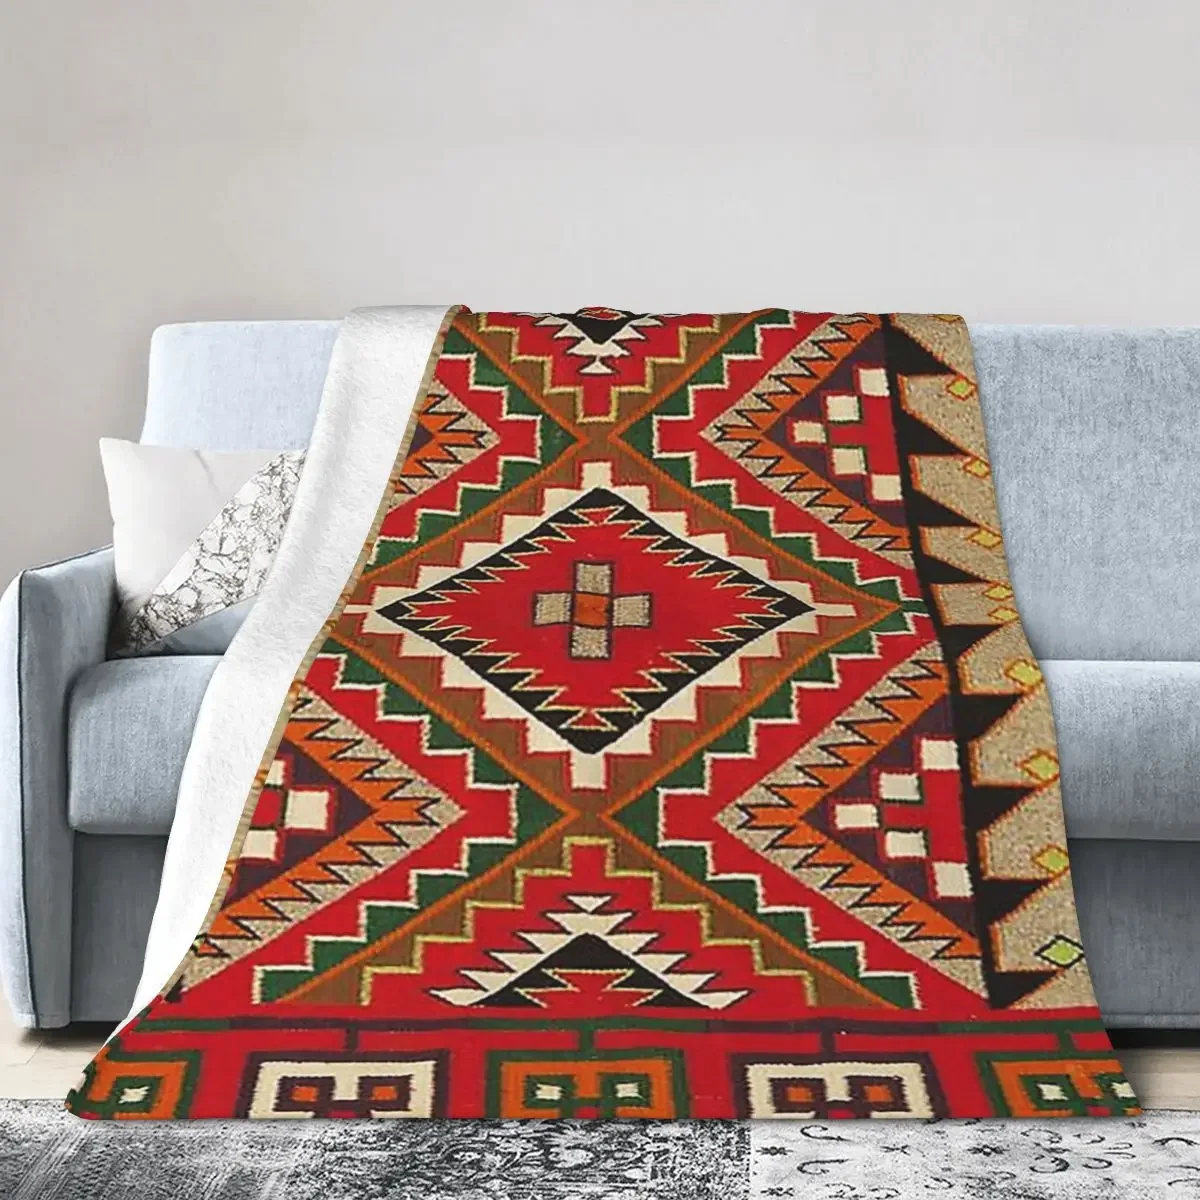 

Одеяло-седло Navajo 1890, мягкие теплые фланелевые покрывала, покрывало для кровати, гостиной, пикника, путешествия, дома, дивана